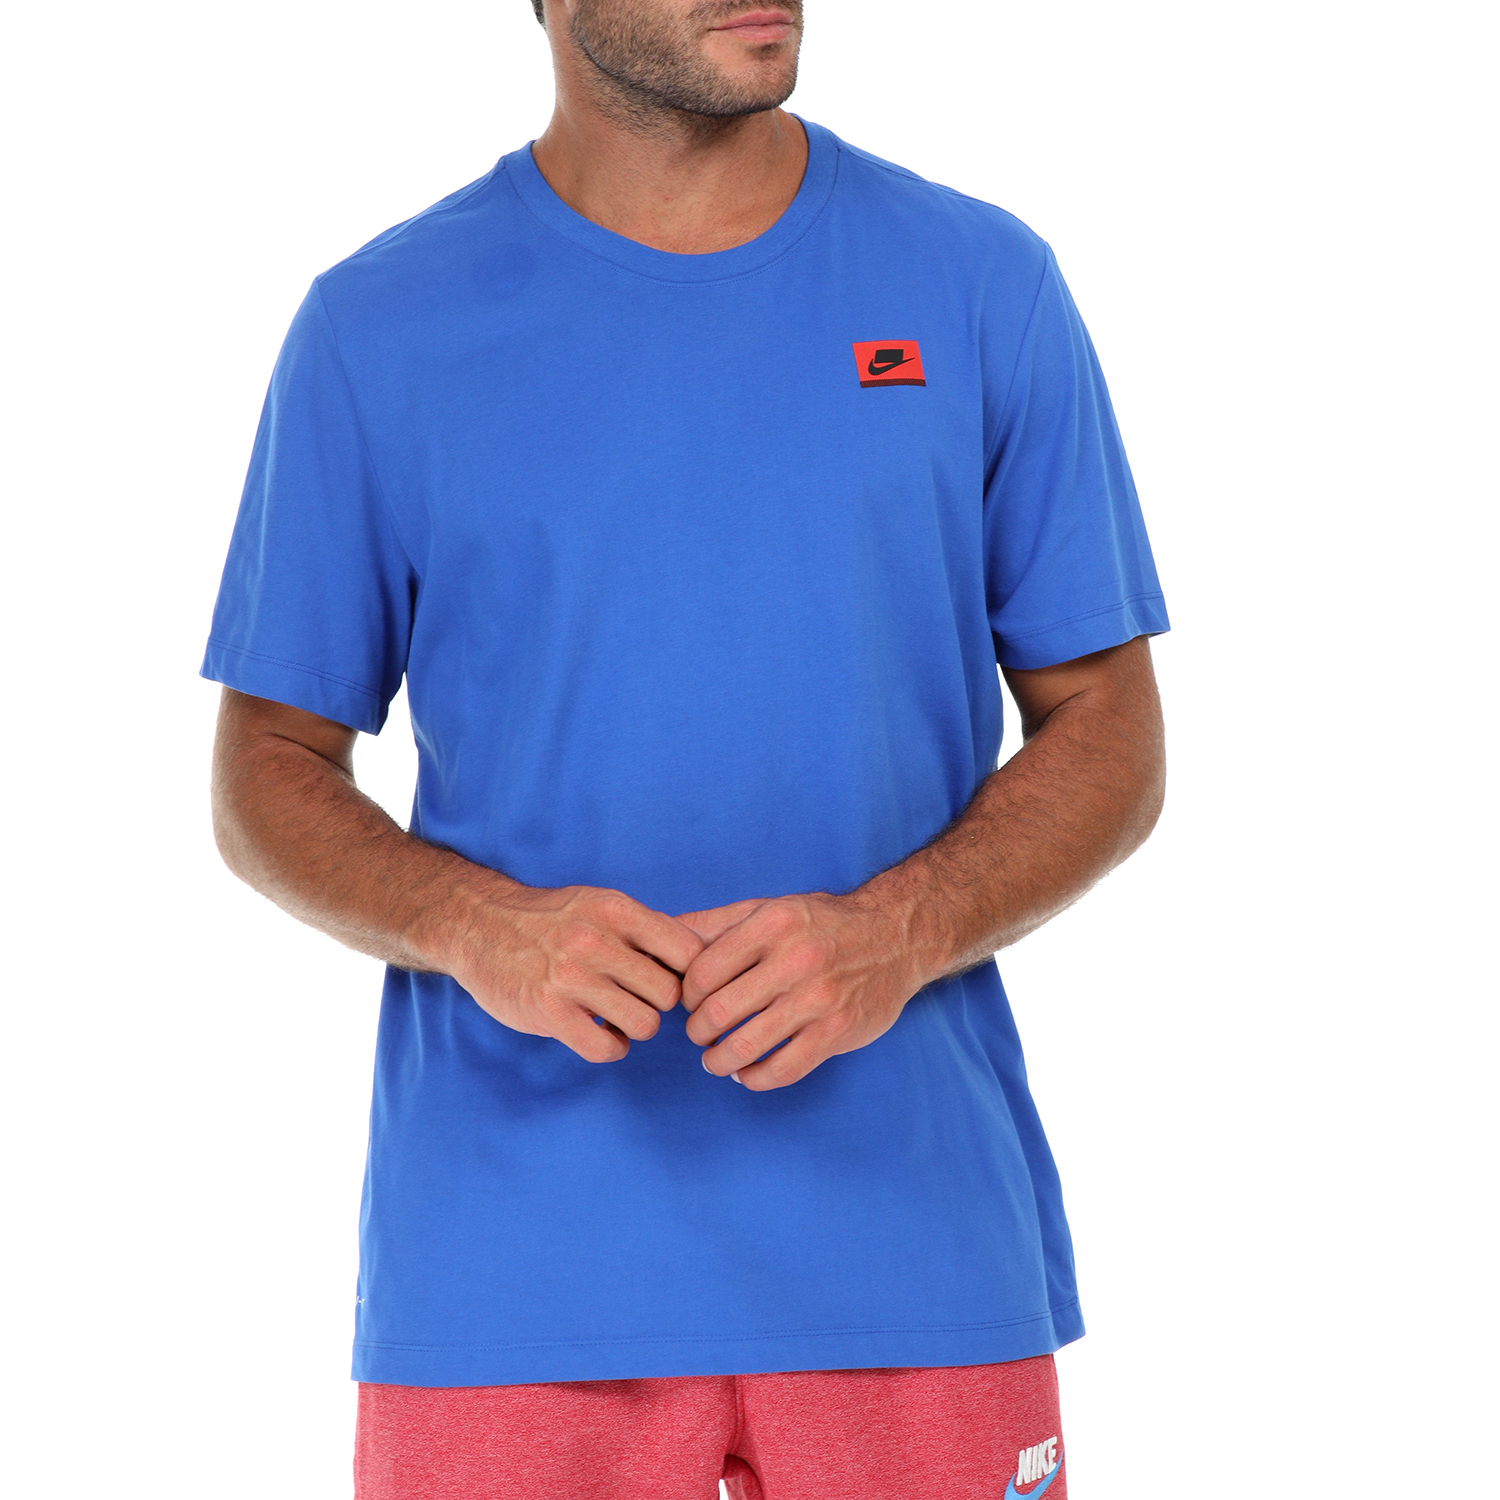 Ανδρικά/Ρούχα/Αθλητικά/T-shirt NIKE - Αθλητική κοντομάνικη μπλούζα NIKE DRY DANGEROUS YTH μπλε